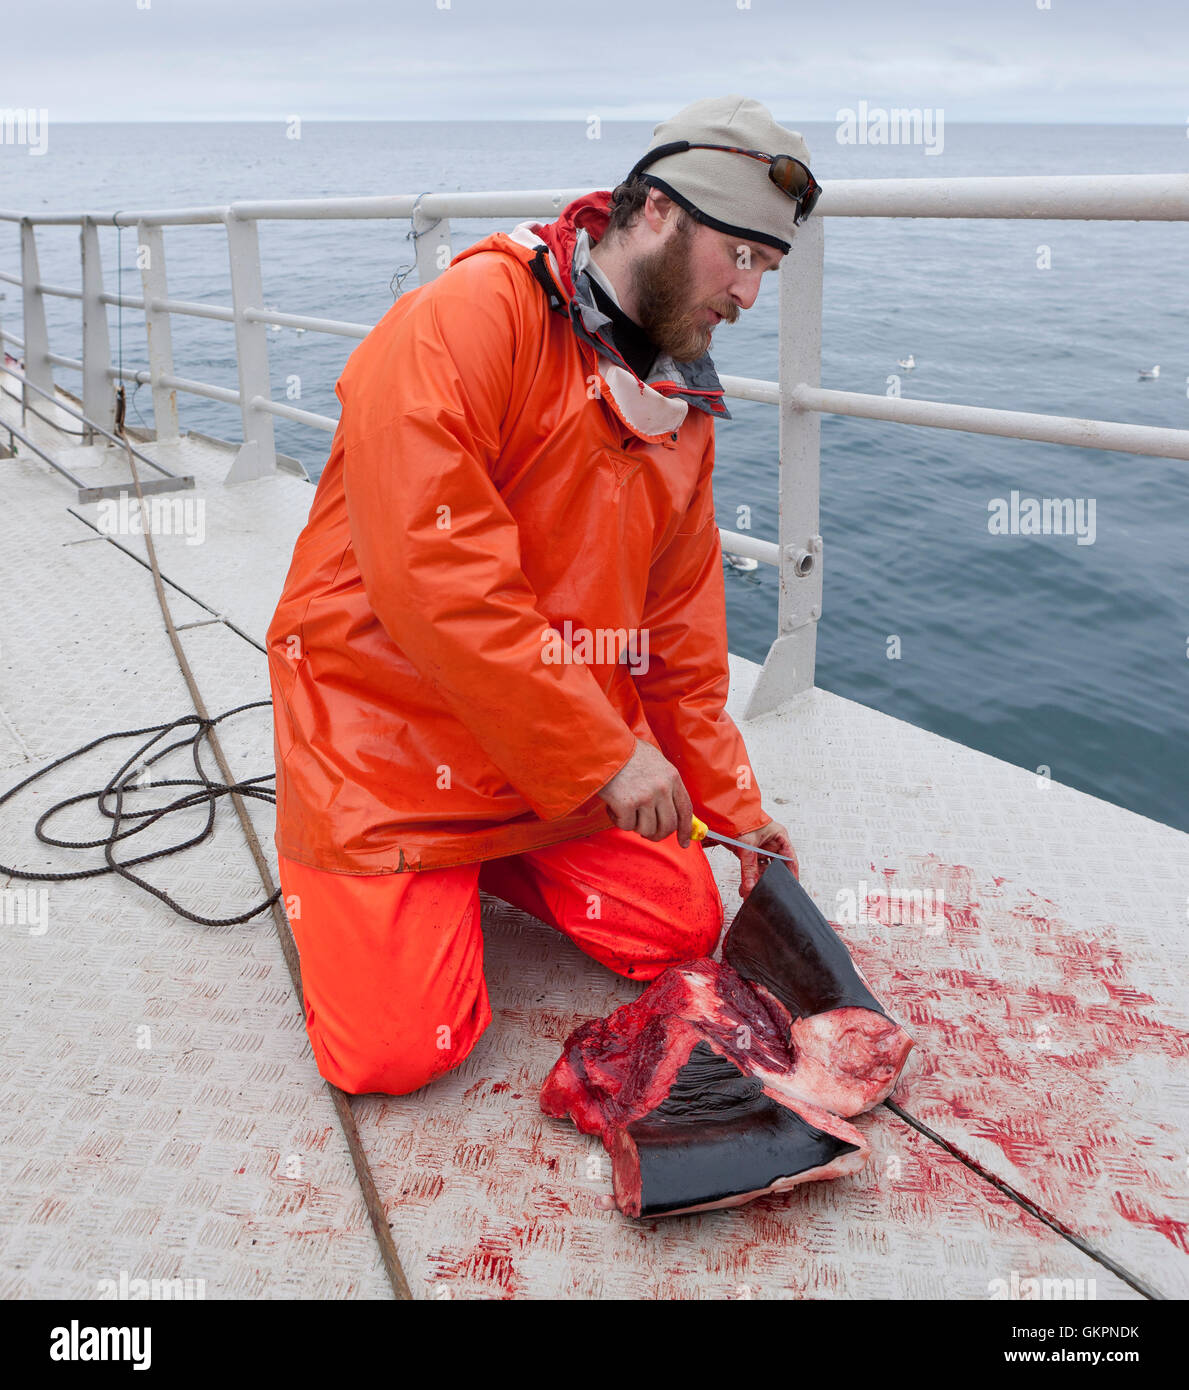 Chercheur scientifique coupe un morceau de viande à partir d'un petit rorqual, KO Hrafnreydur-100, baleinier, Islande Banque D'Images